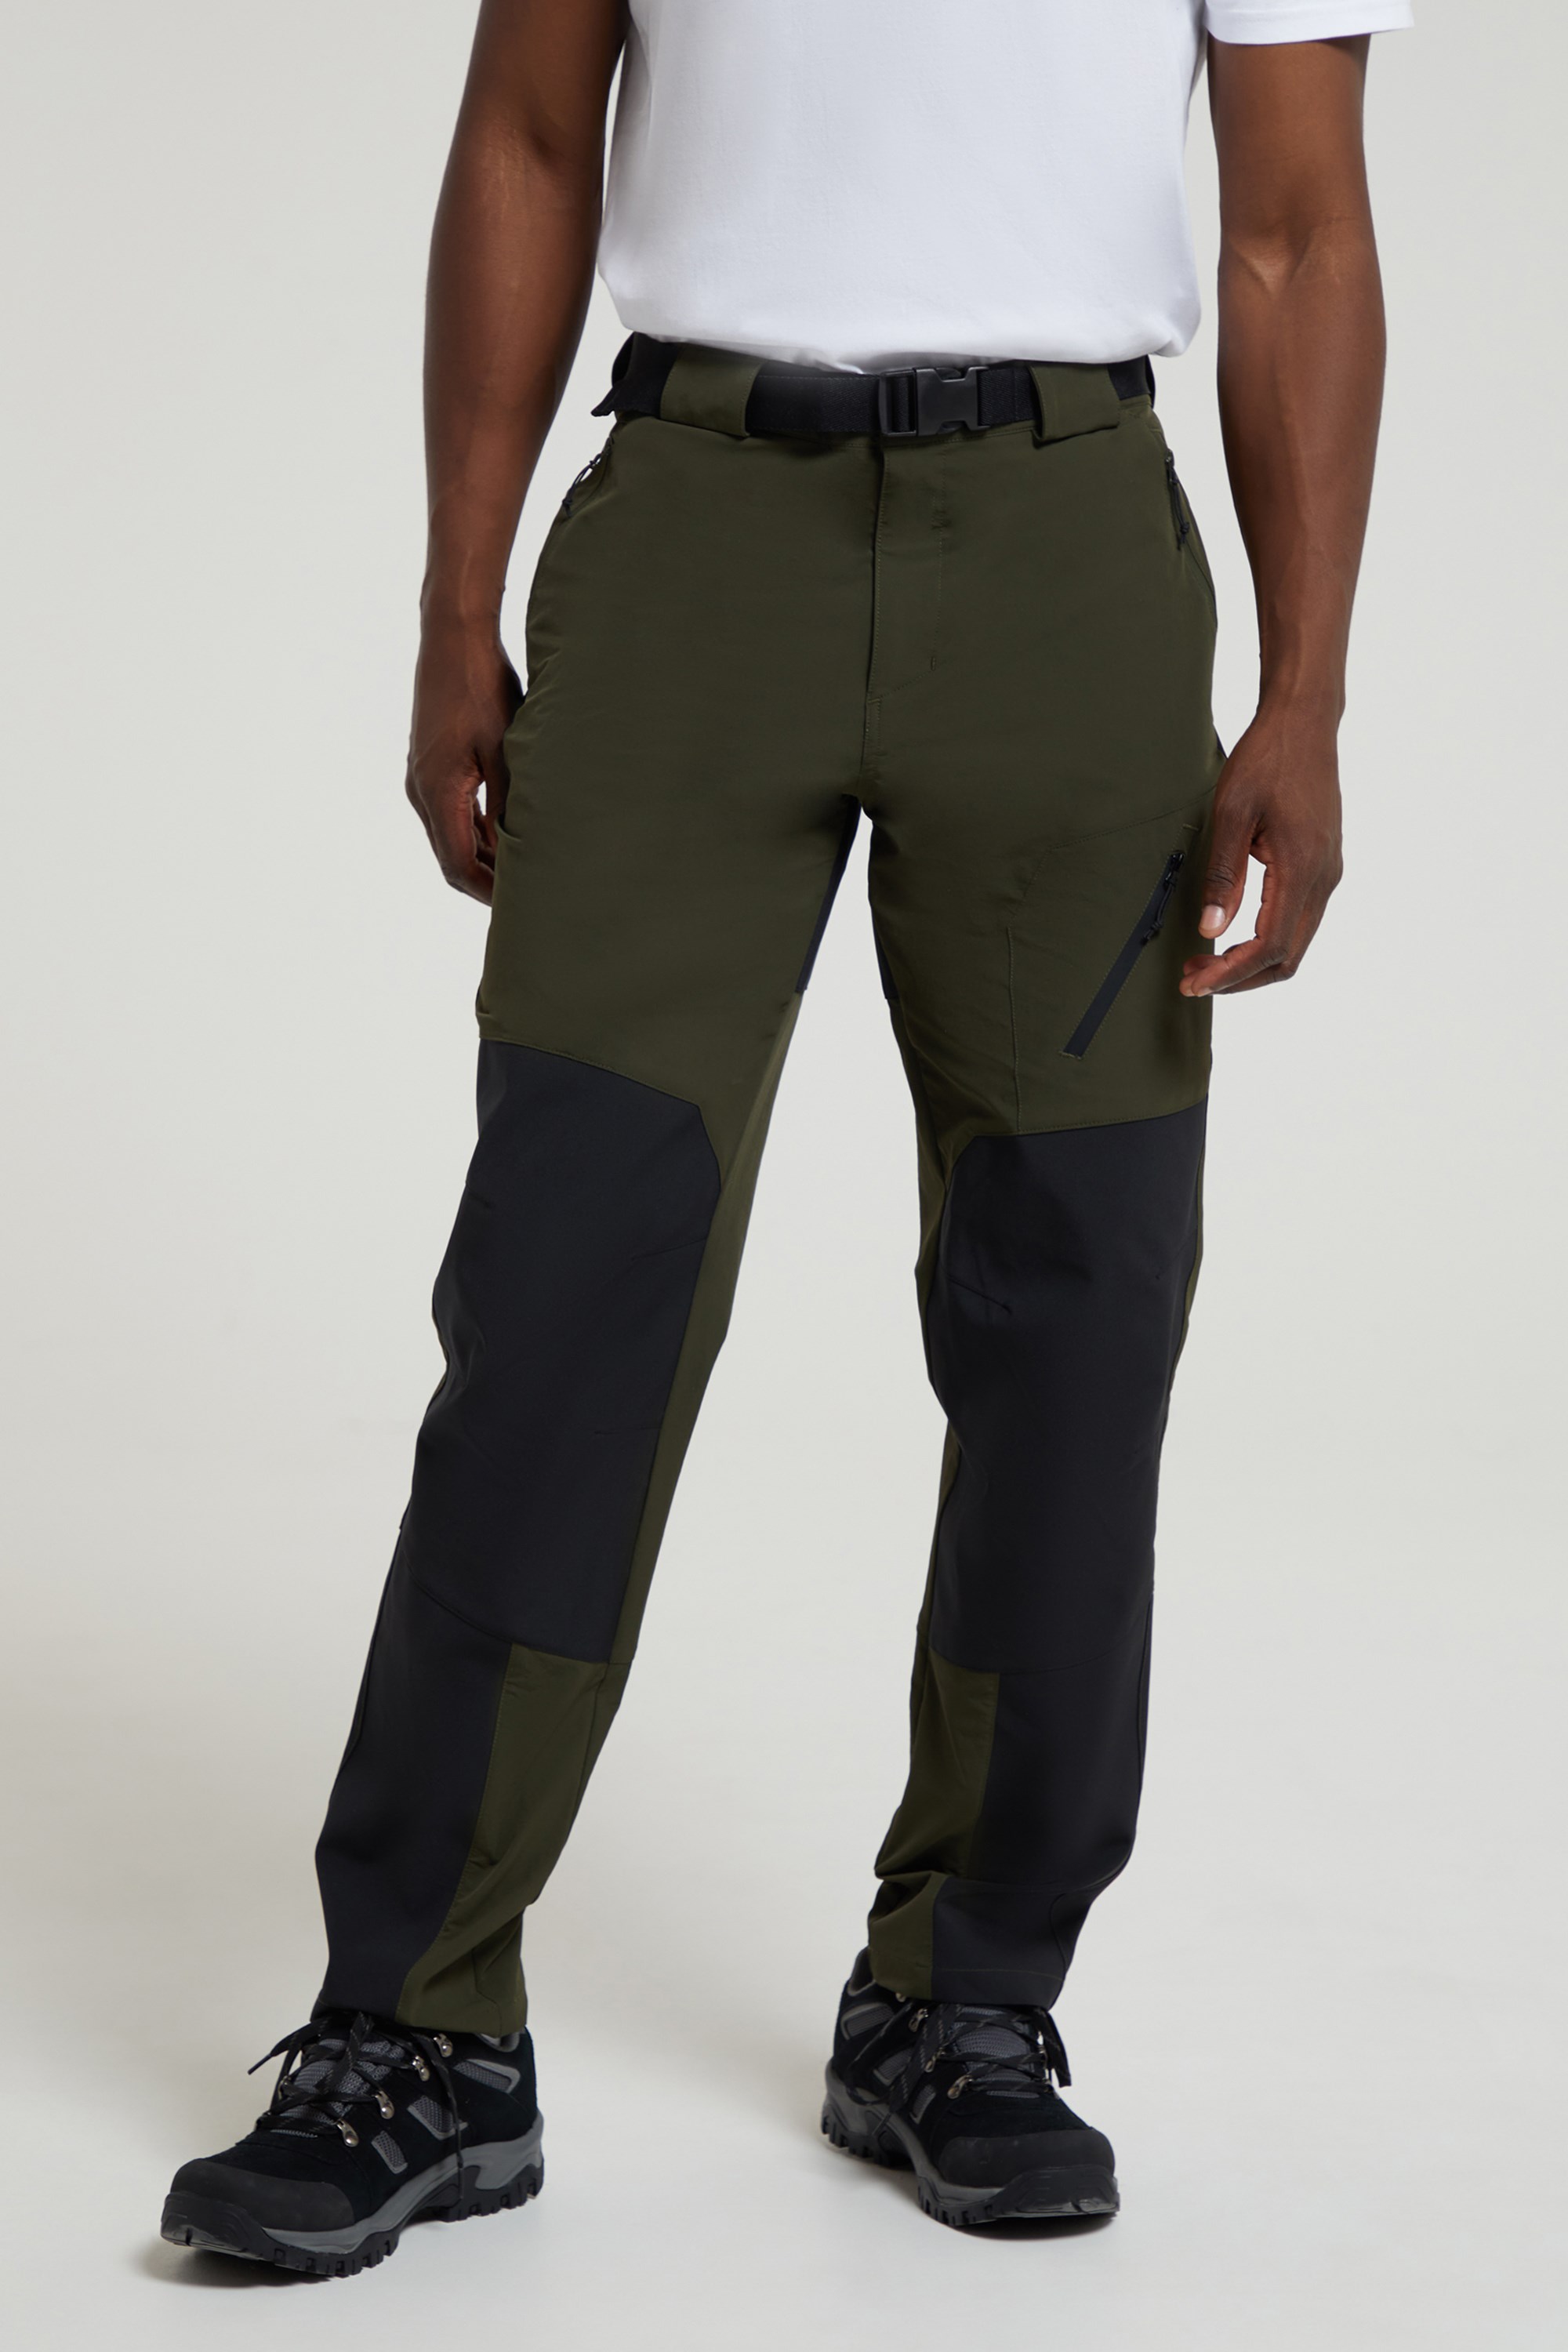 Salomon Wayfarer Pants - Walking trousers Men's | Free EU Delivery |  Bergfreunde.eu